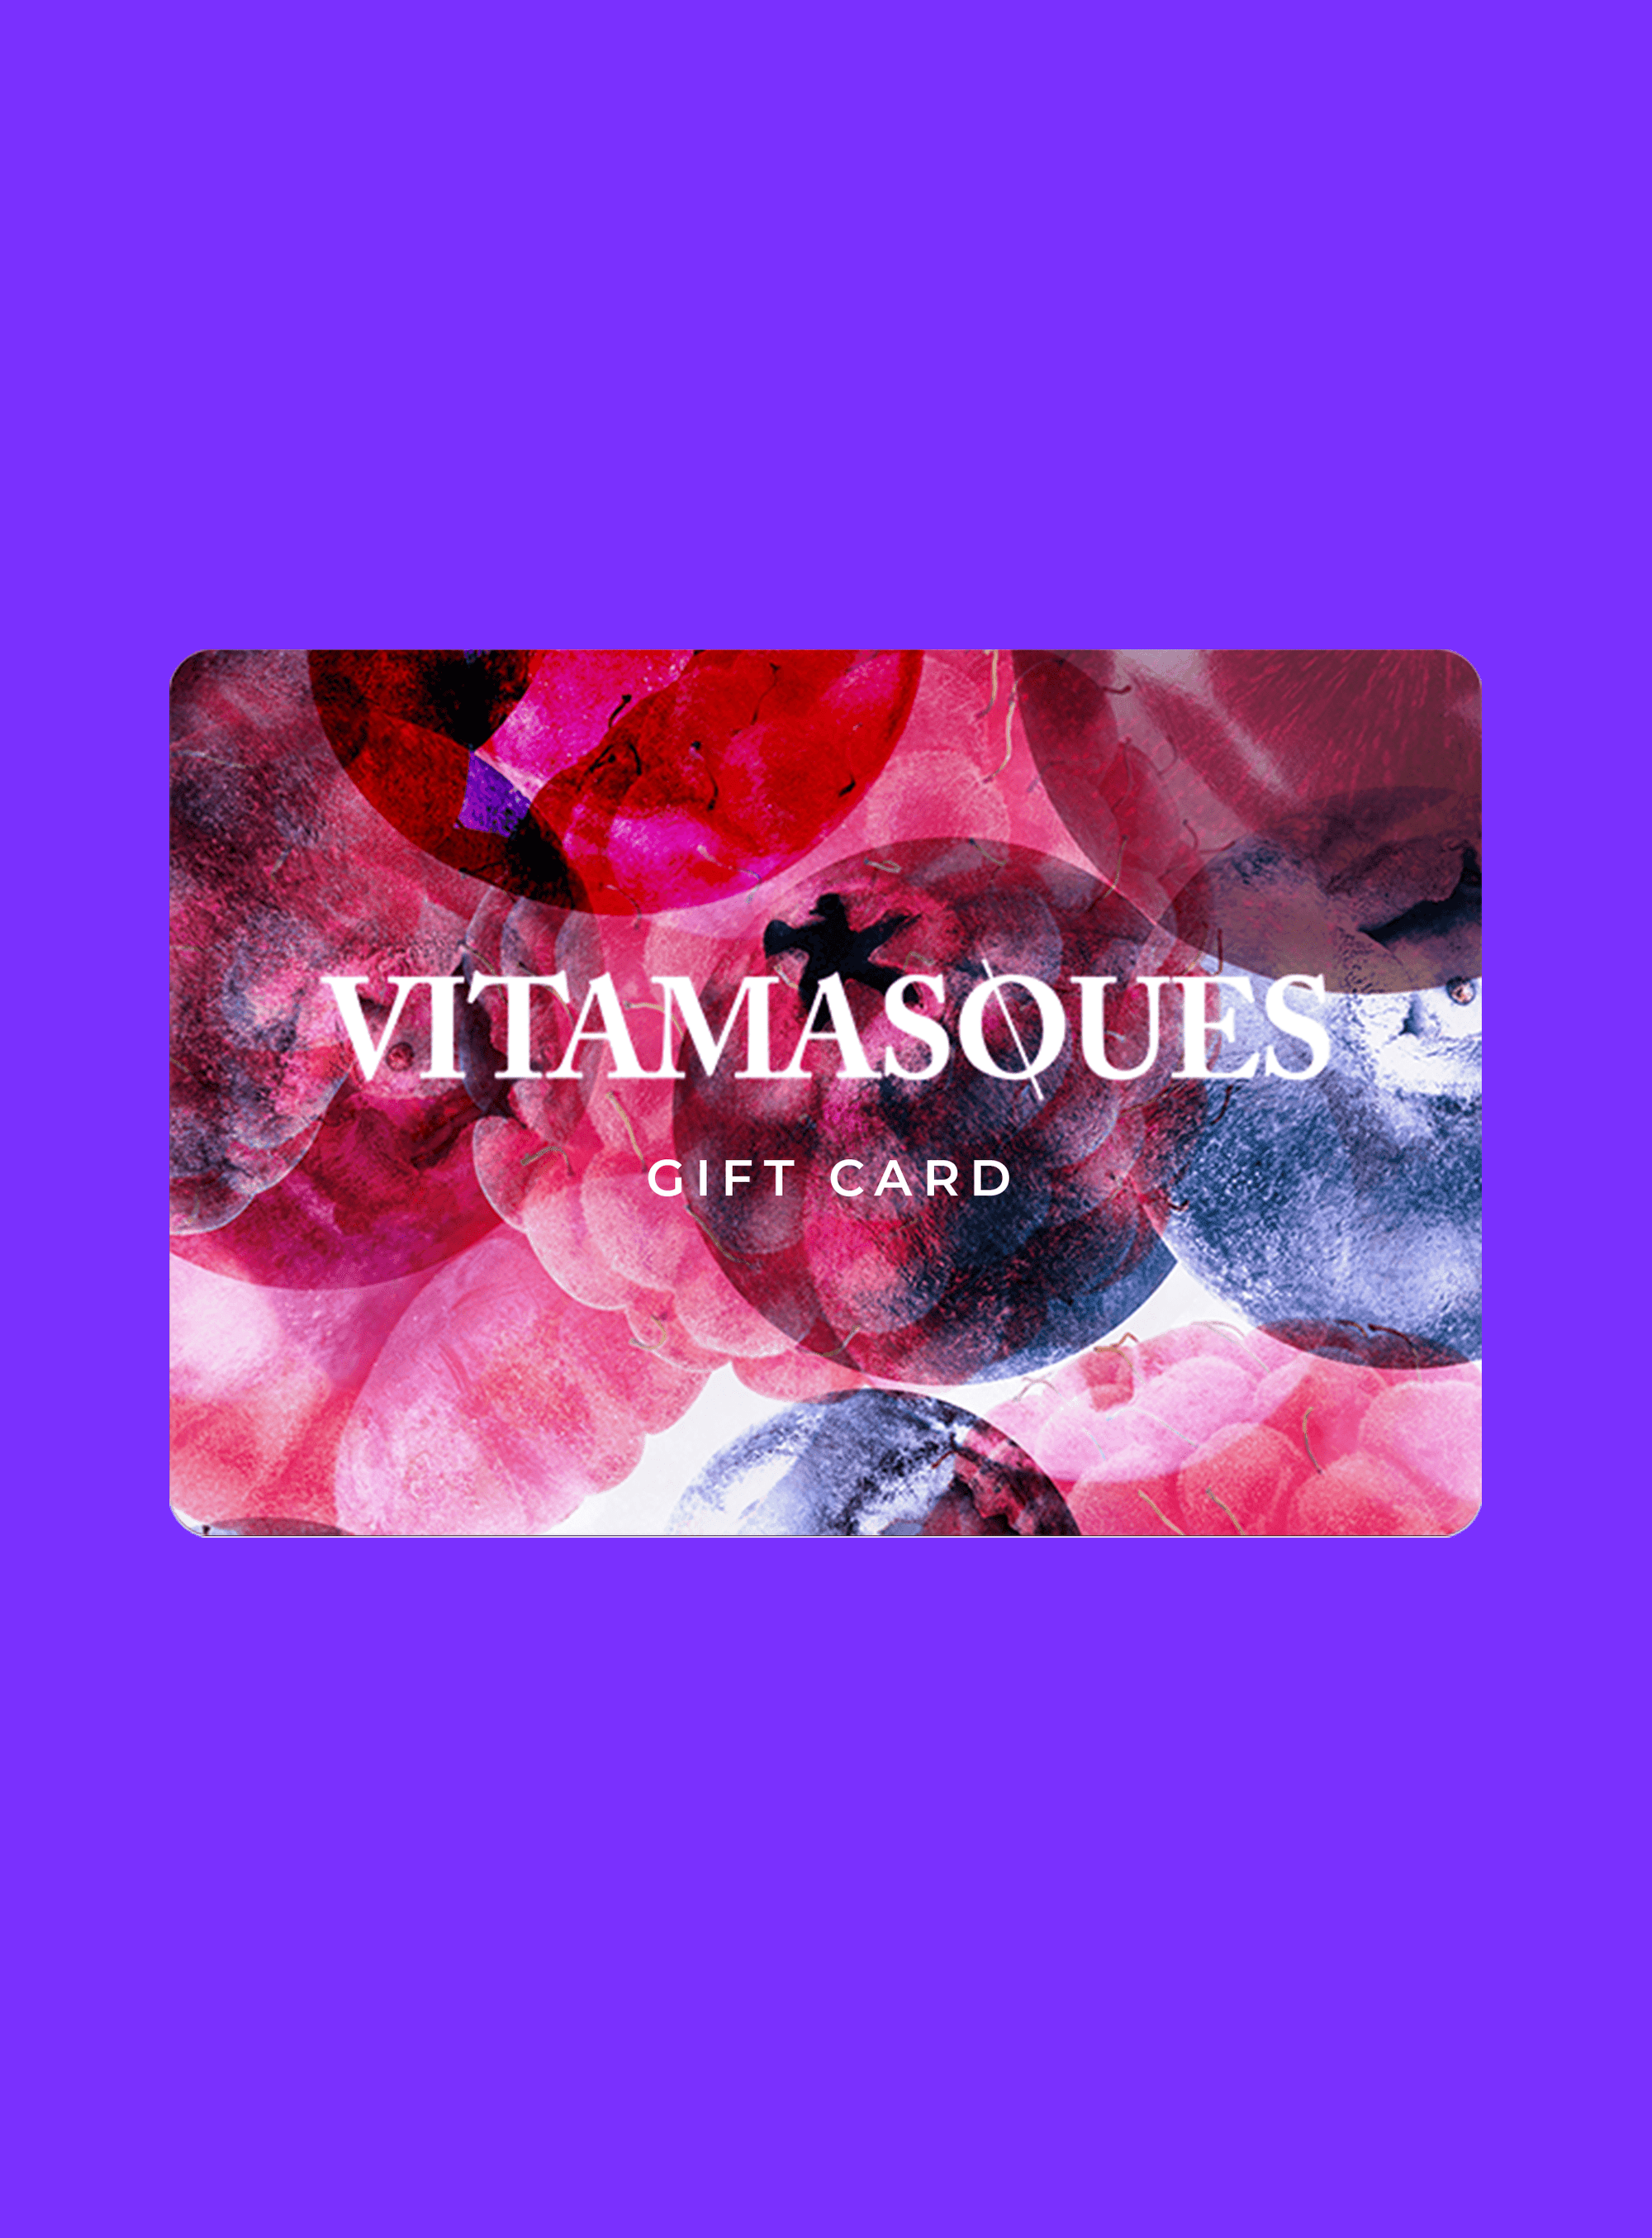 Vitamasques Gift Card - Vitamasques